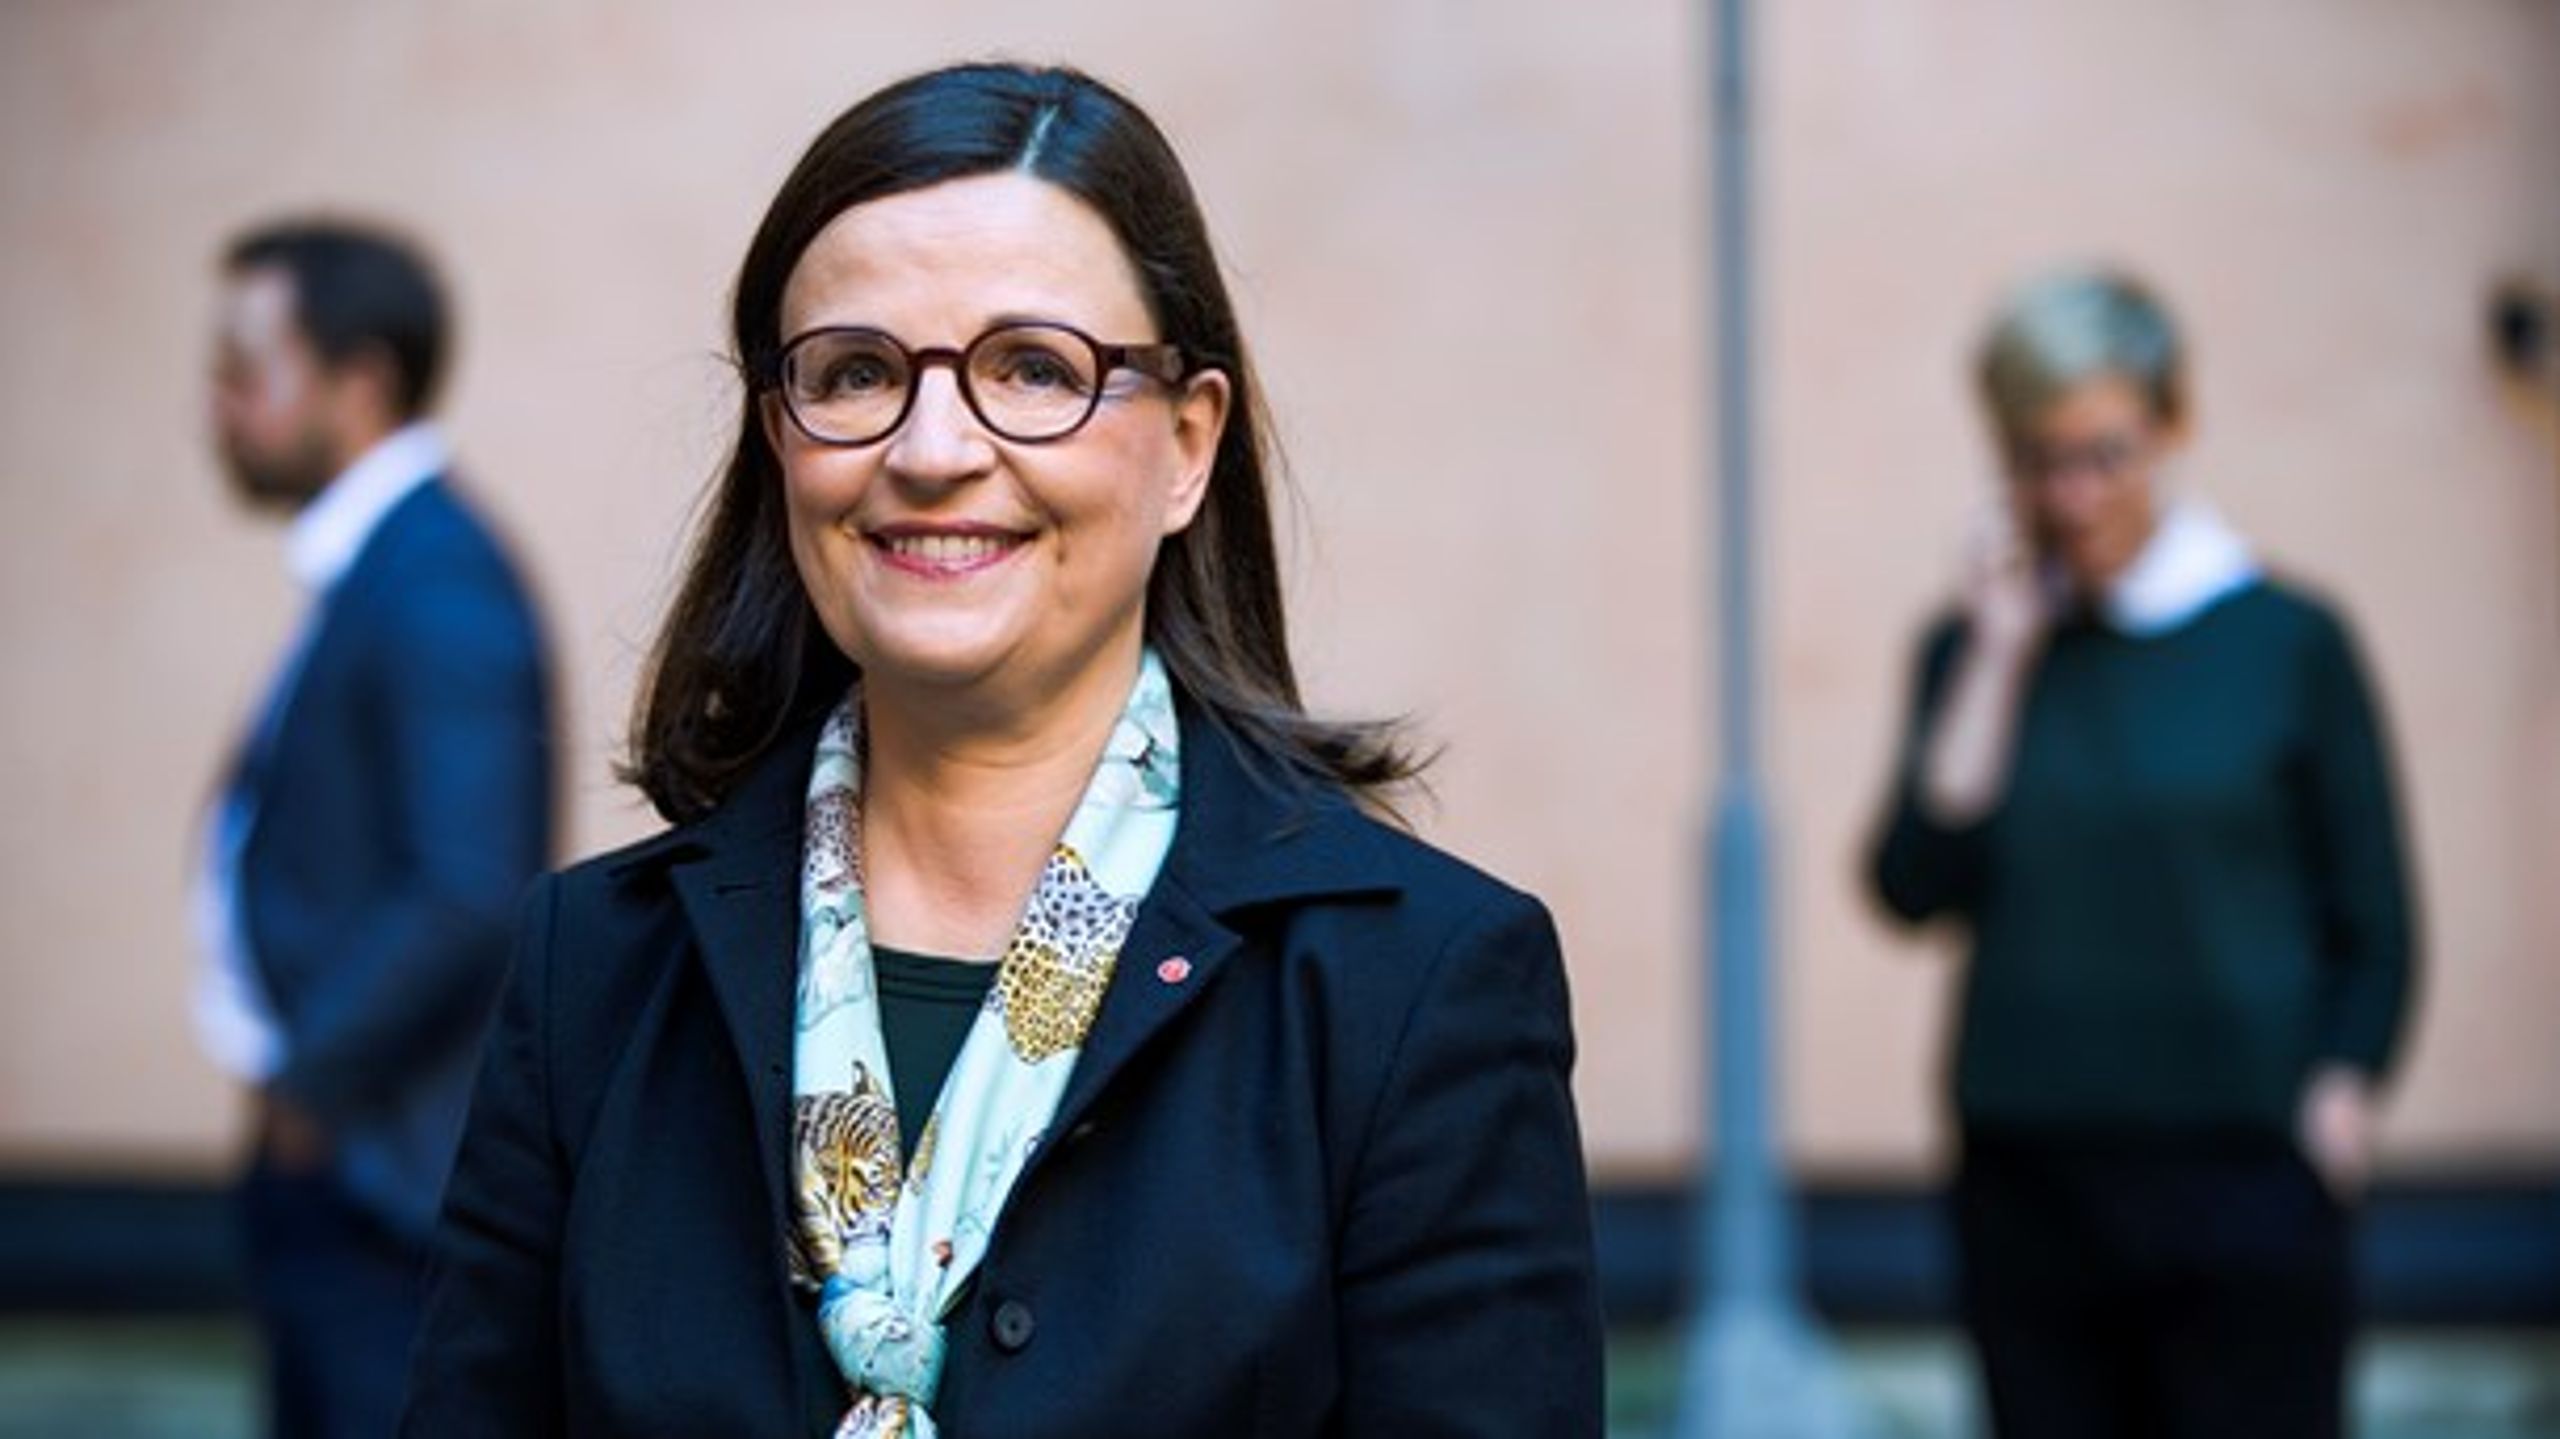 Gymnasie- och kunskapslyftsminister Anna Ekström (S) förklarar att det blir en lång övergång till mer samlade statsbidrag för att underlätta för huvudmän.